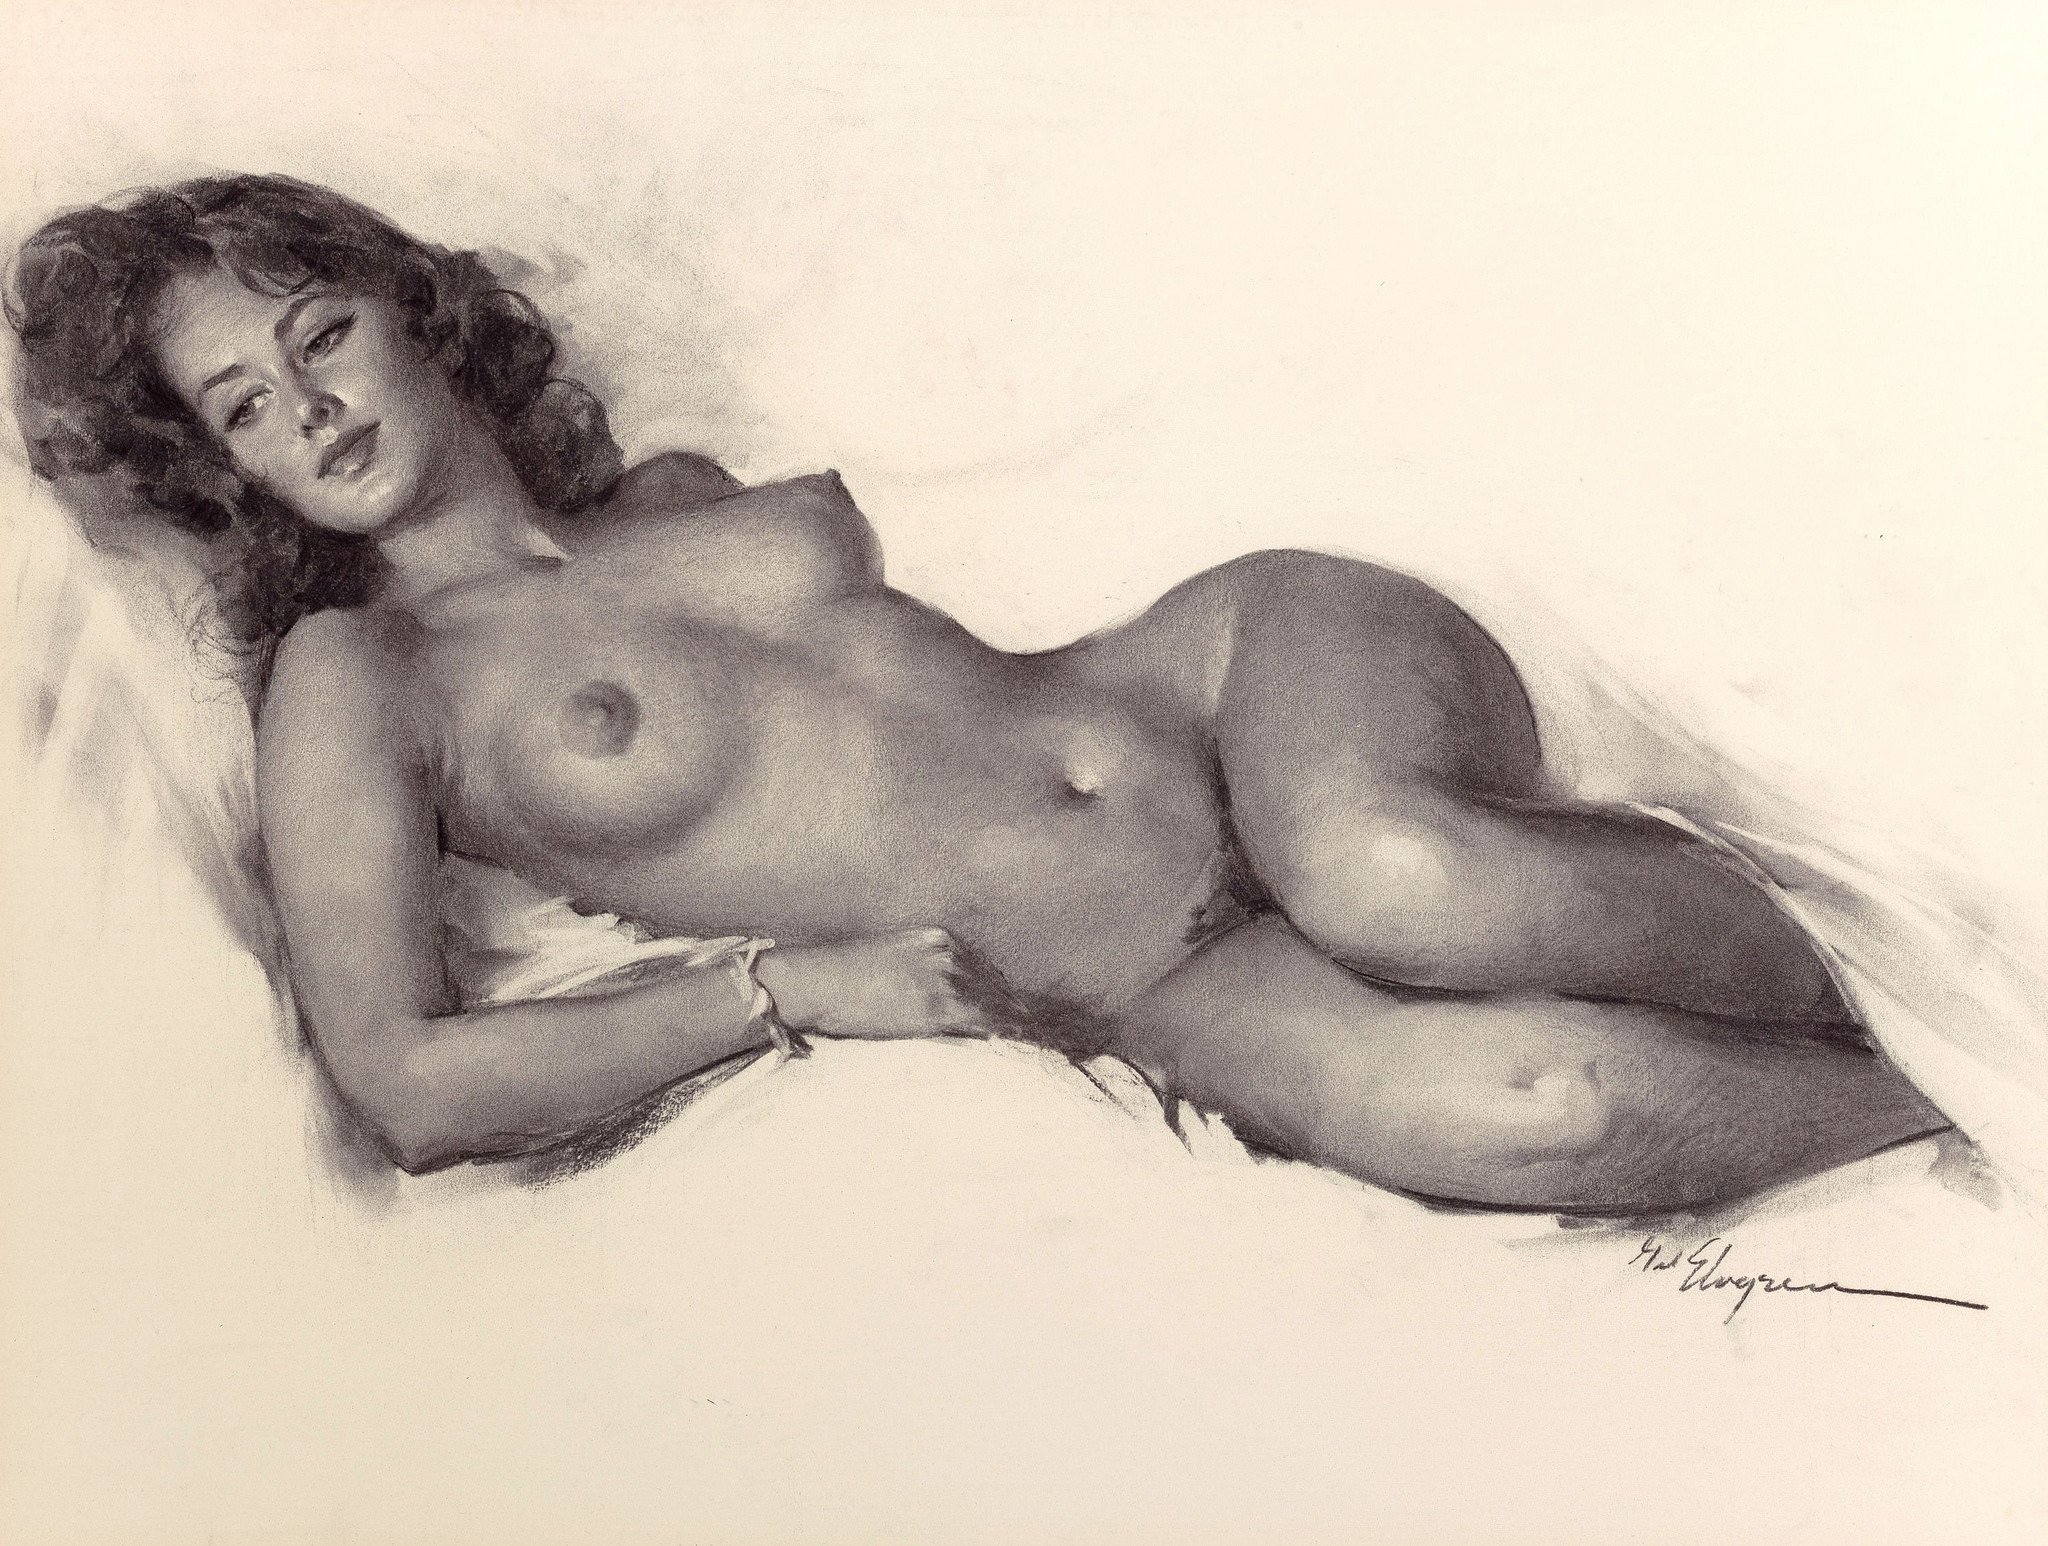 Art beauty nude